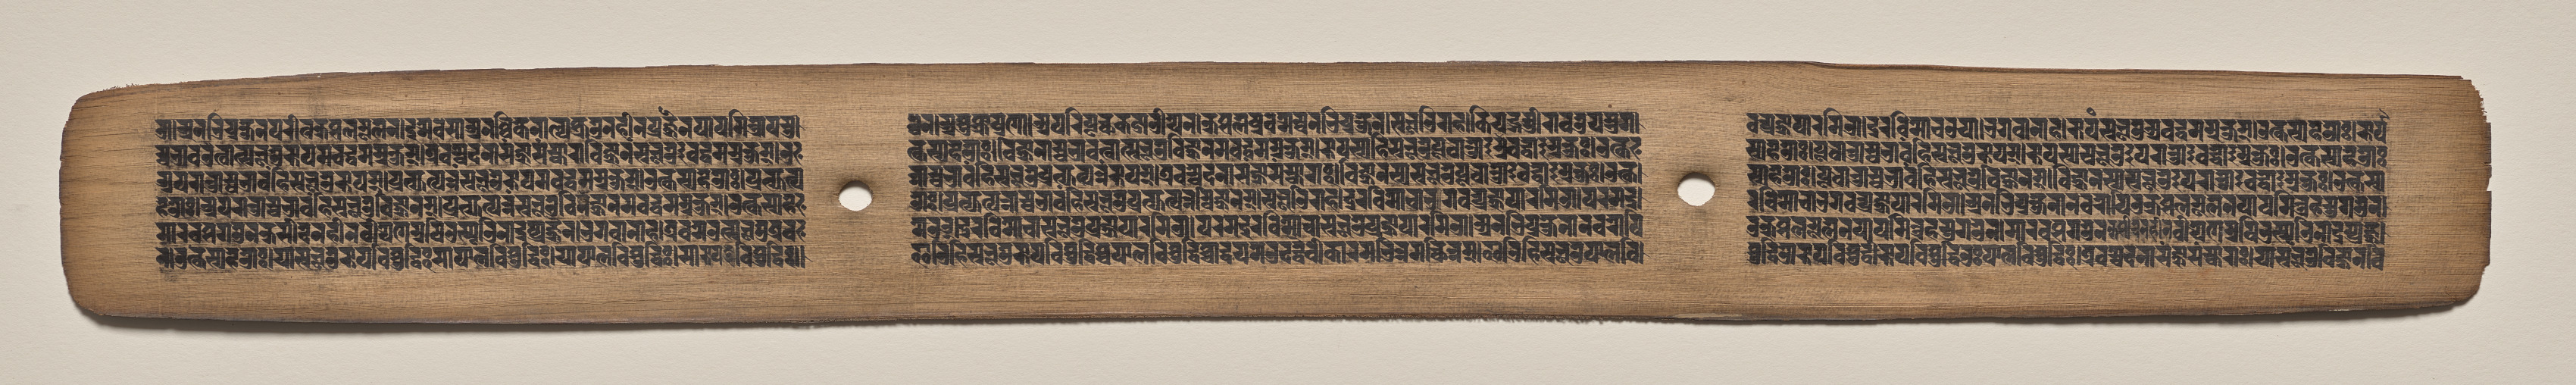 Text, Folio 66 (recto), from a Manuscript of the Perfection of Wisdom in Eight Thousand Lines (Ashtasahasrika Prajnaparamita-sutra)